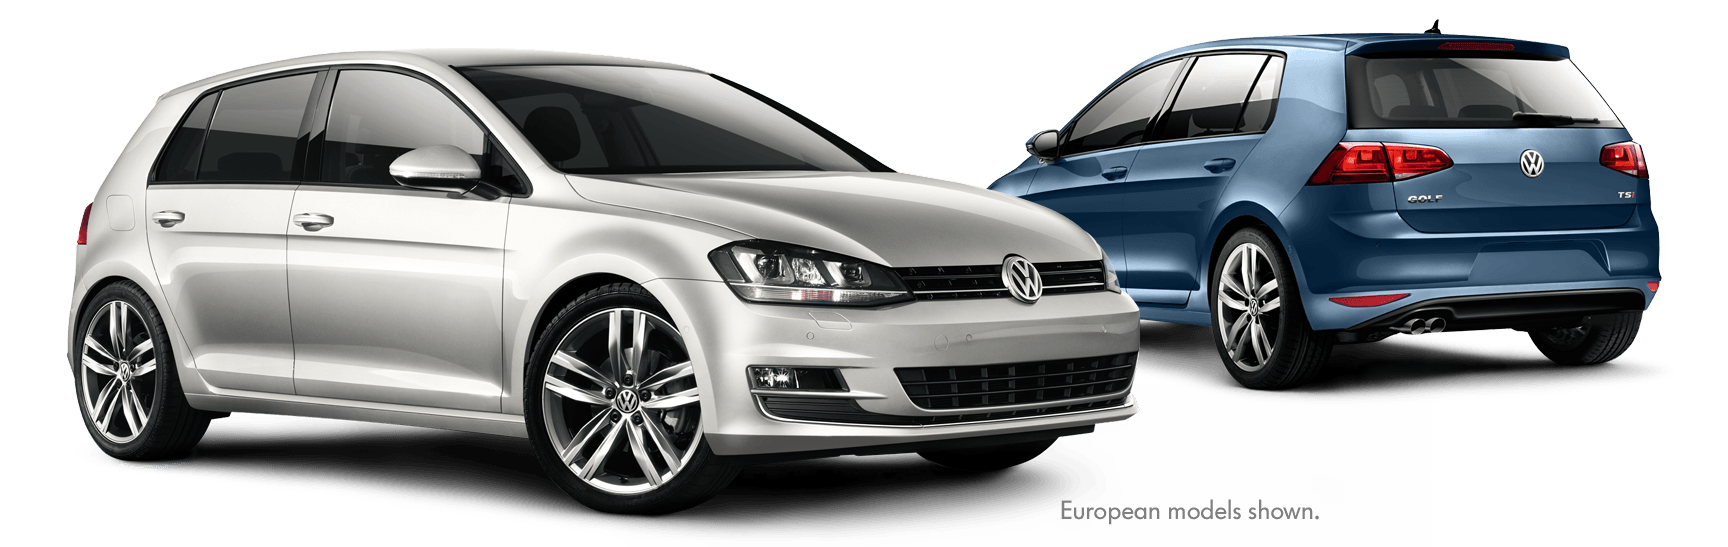 Volkswagen Logo 3D